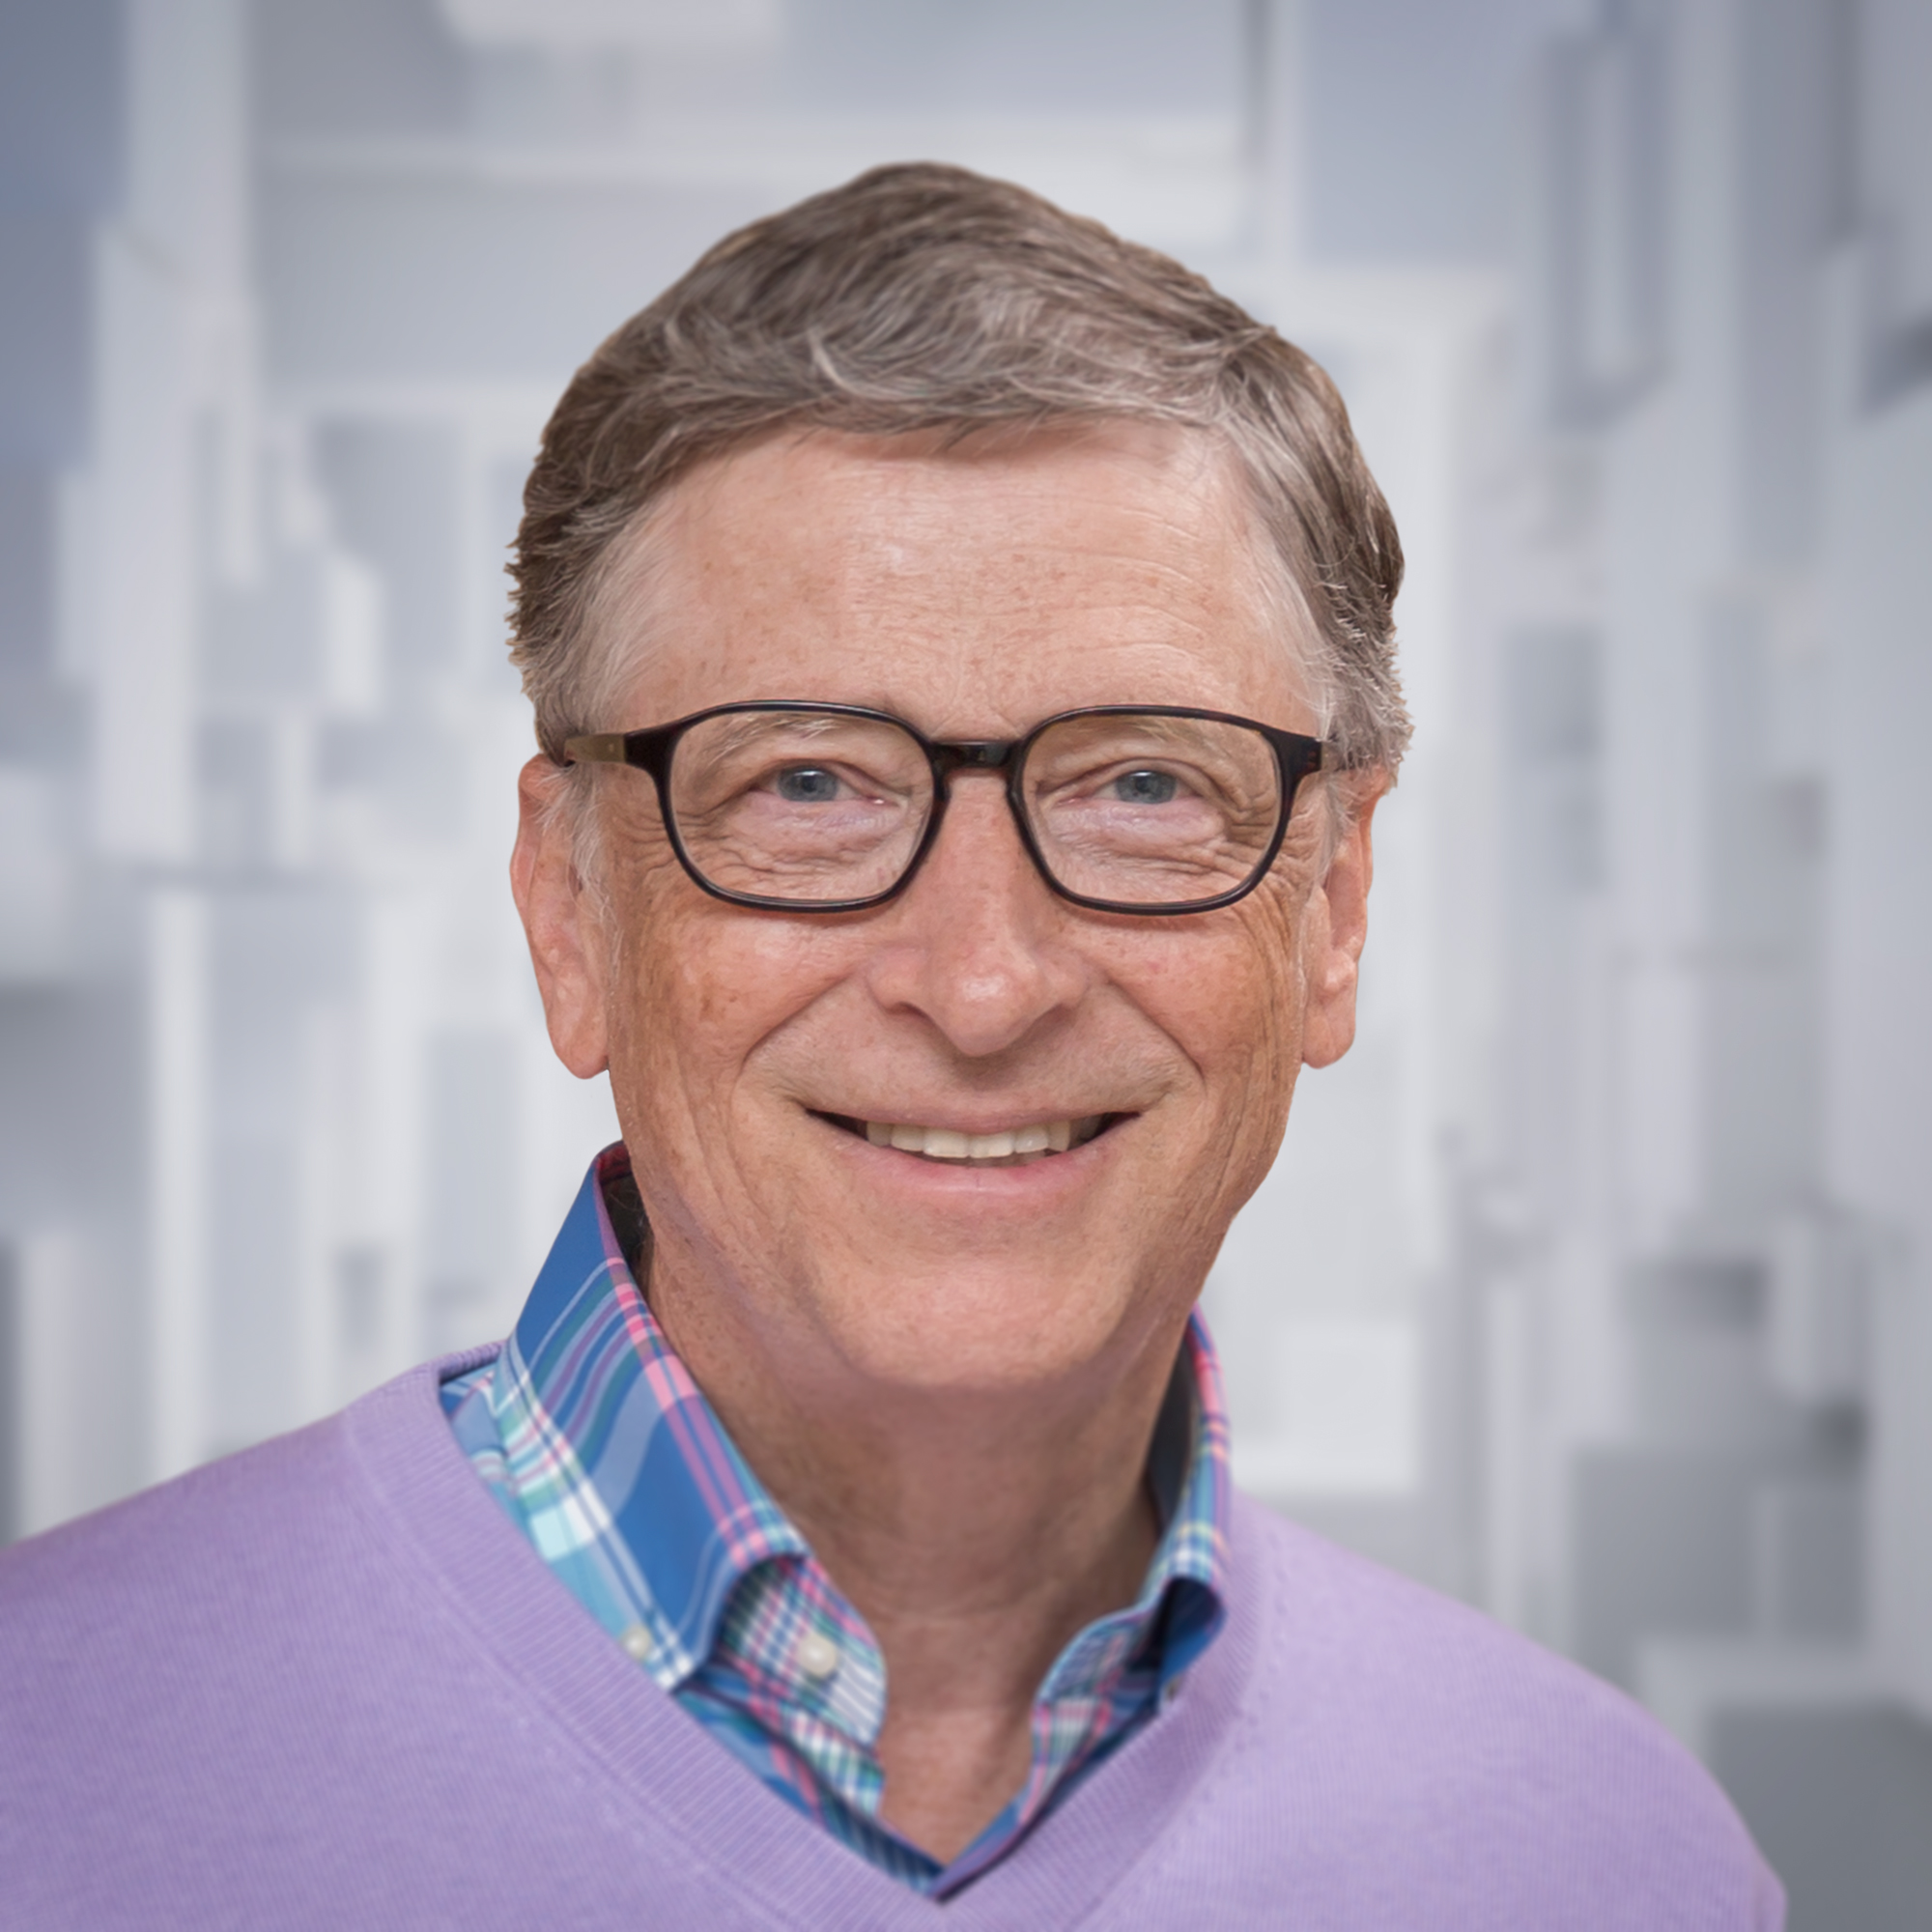   Bill Gates - Doanh nhân thành đạt người Mỹ  